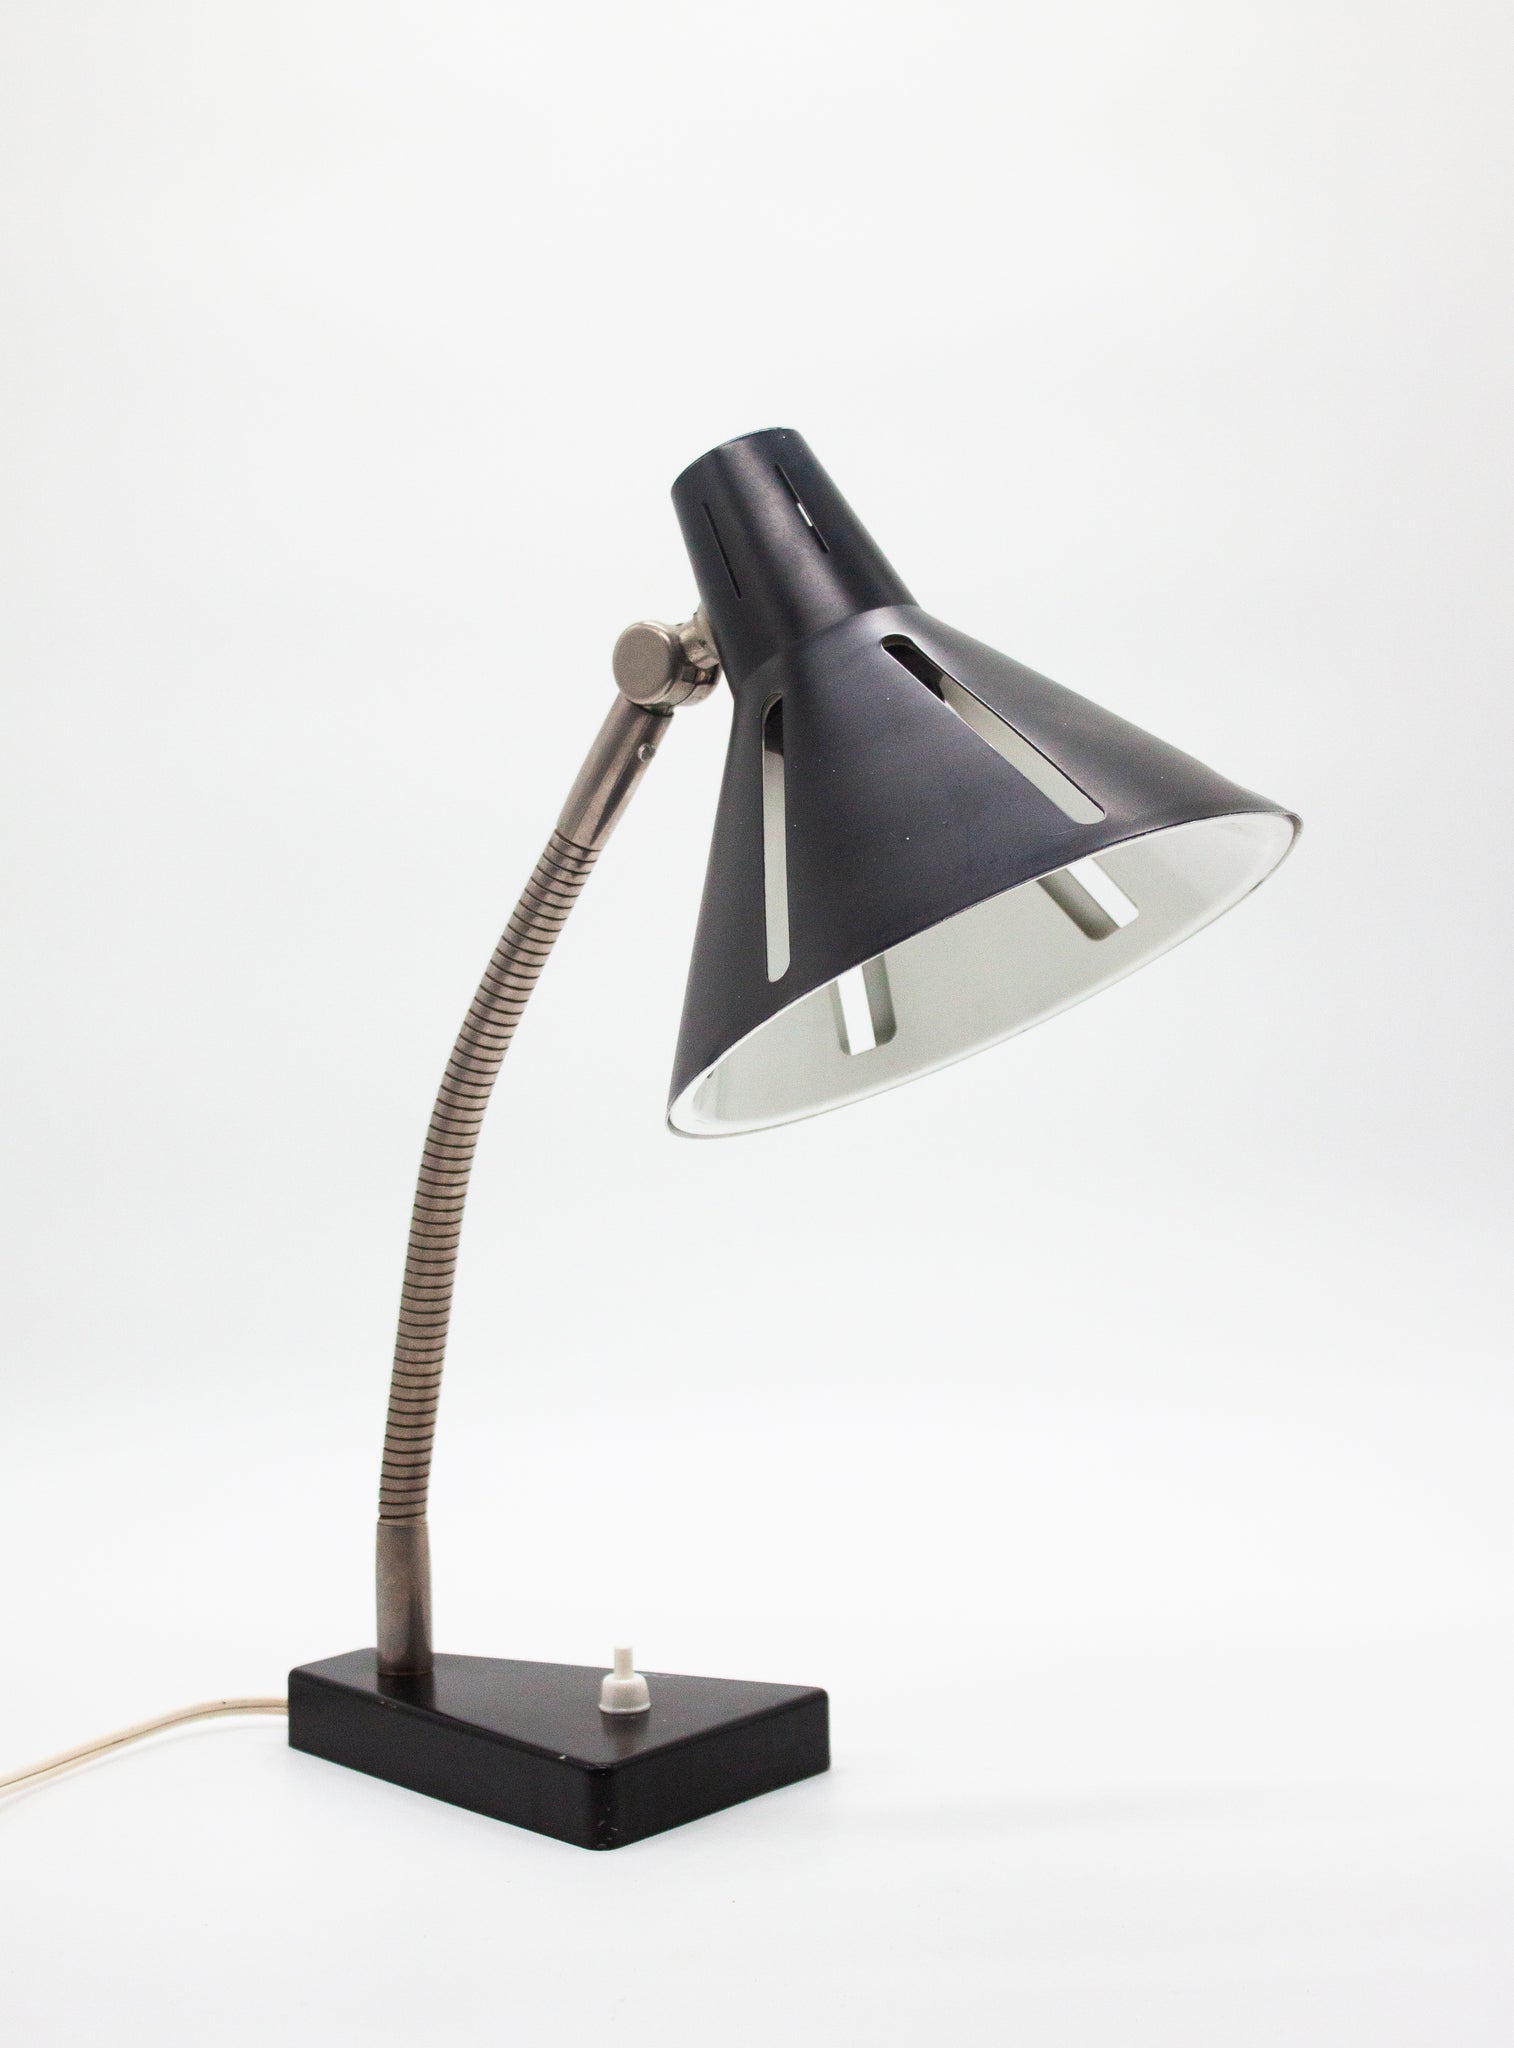 Hala 'Zonneserie' Desk Lamp by H. Busquet (Black)